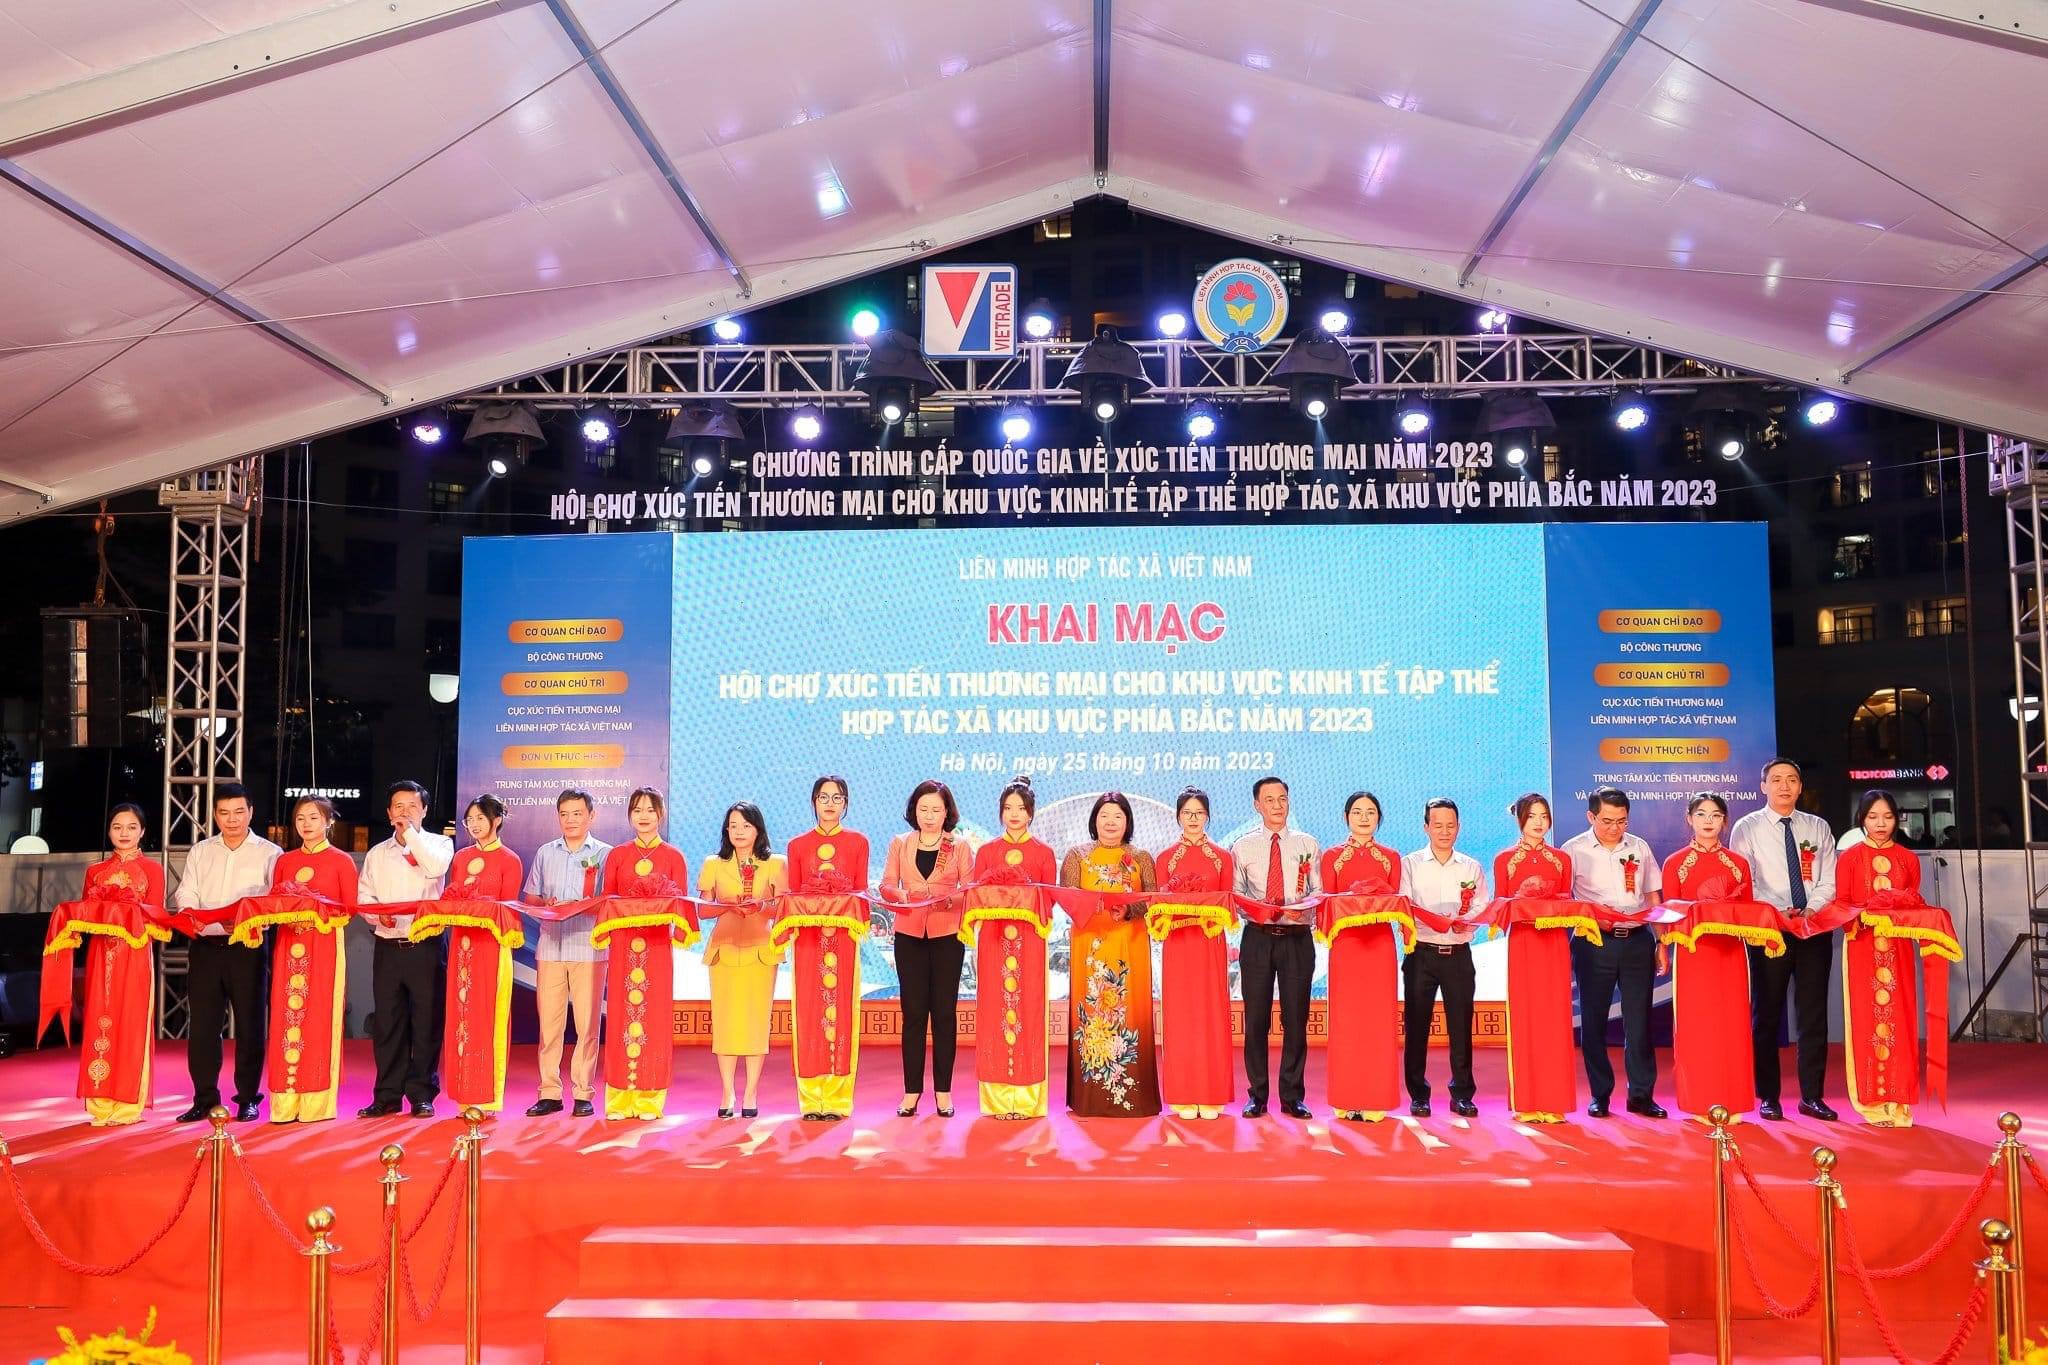 Đơn vị thành viên Liên minh HTX tỉnh Thái Bình tham gia Hội chợ Xúc tiến thương mại cho khu vực kinh tế tập thể, HTX khu vực phía Bắc năm 2023